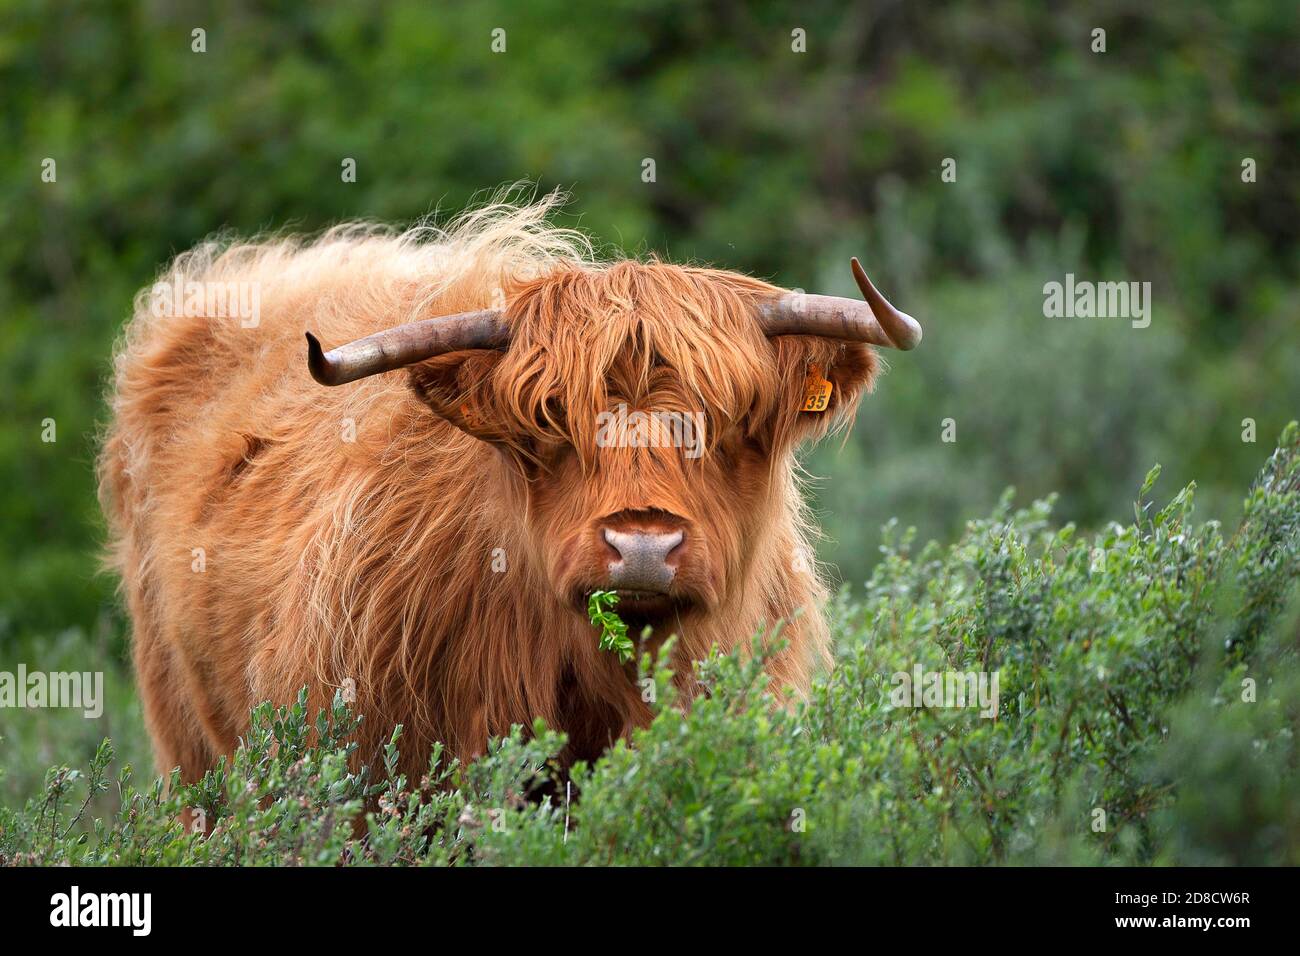 Bovins écossais des Highlands, Kyloe, vache des Highlands, Heelan coo (Bos primigenius F. taurus), se nourrissant à un arbuste, Belgique, Flandre Occidentale, Westhoek, de panne Banque D'Images